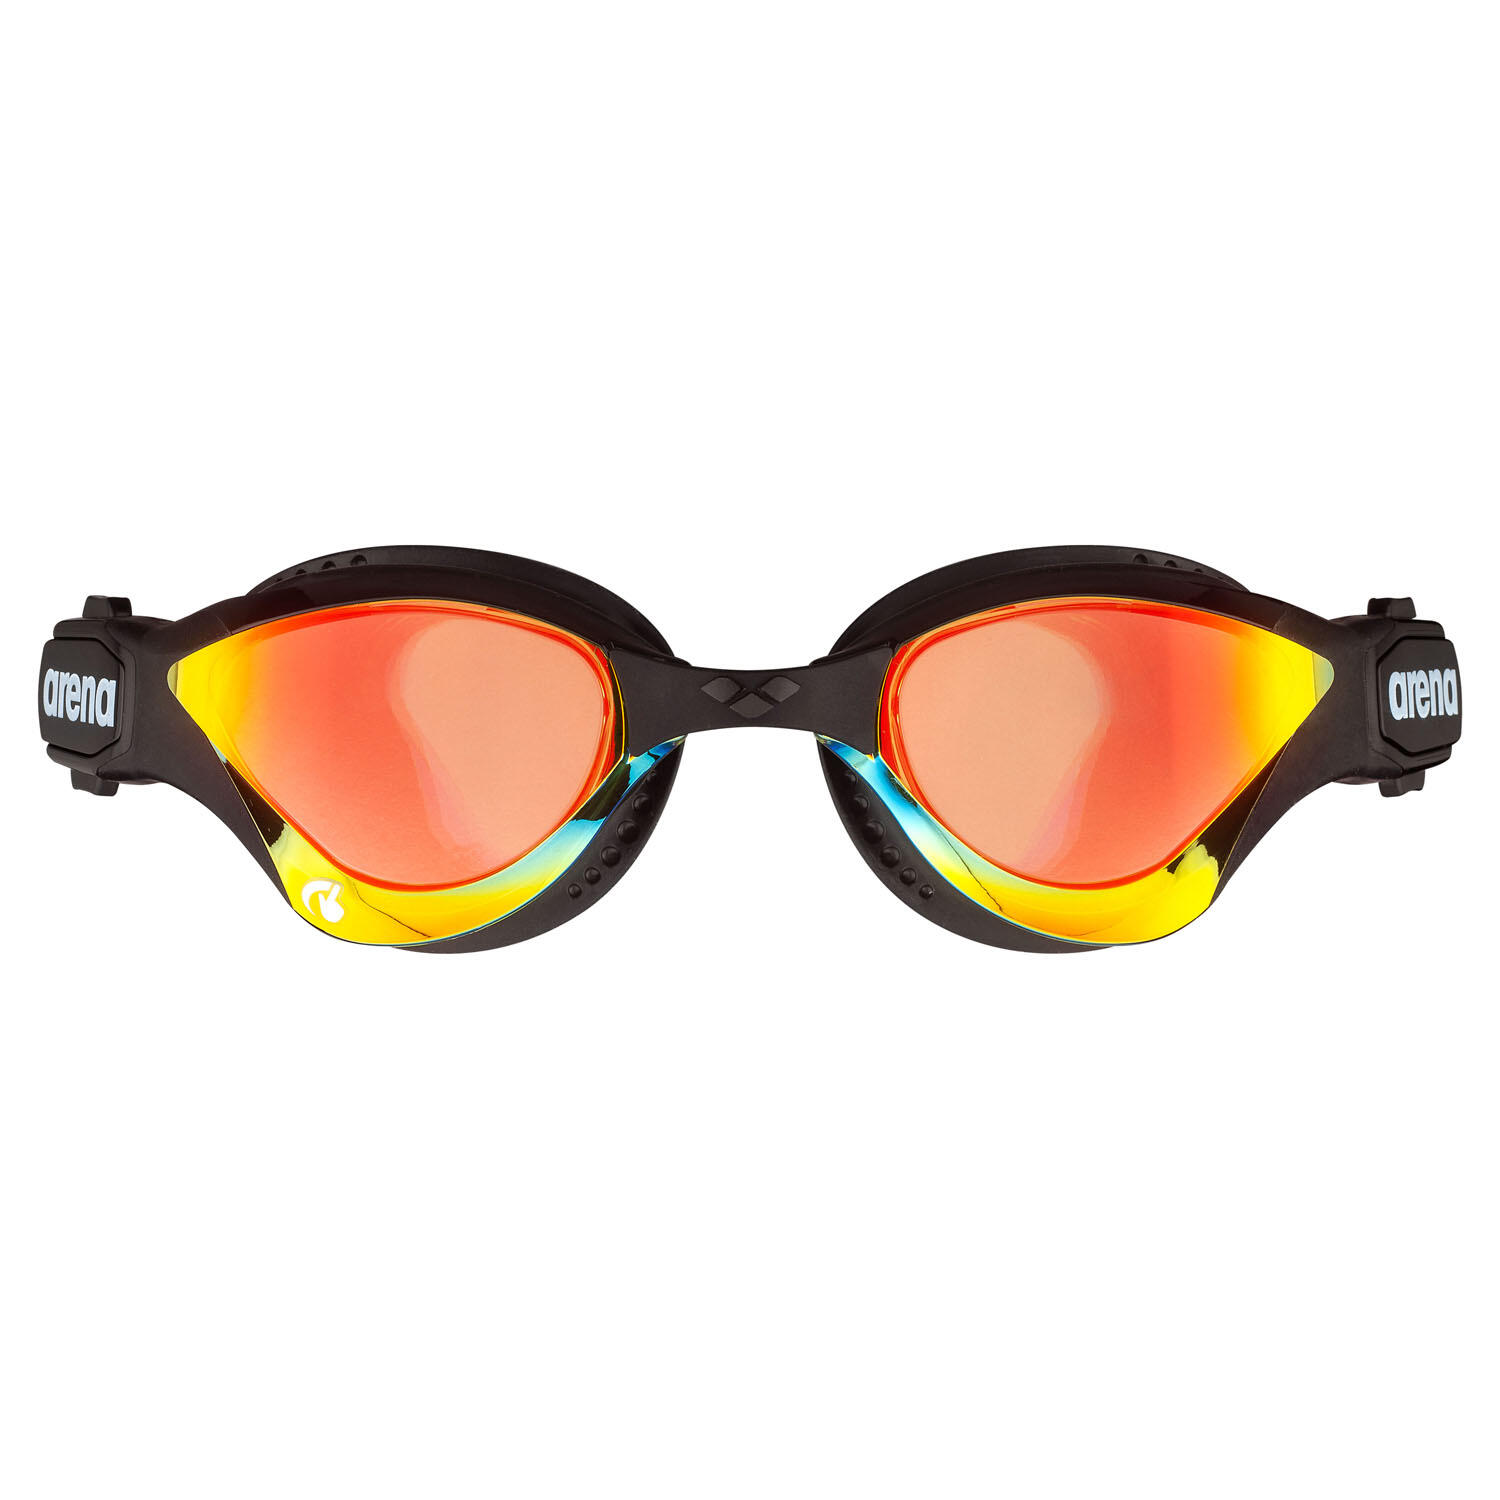 Arena Cobra Tri Swipe Mirrored Goggles - Yellow Copper / Black 4/4